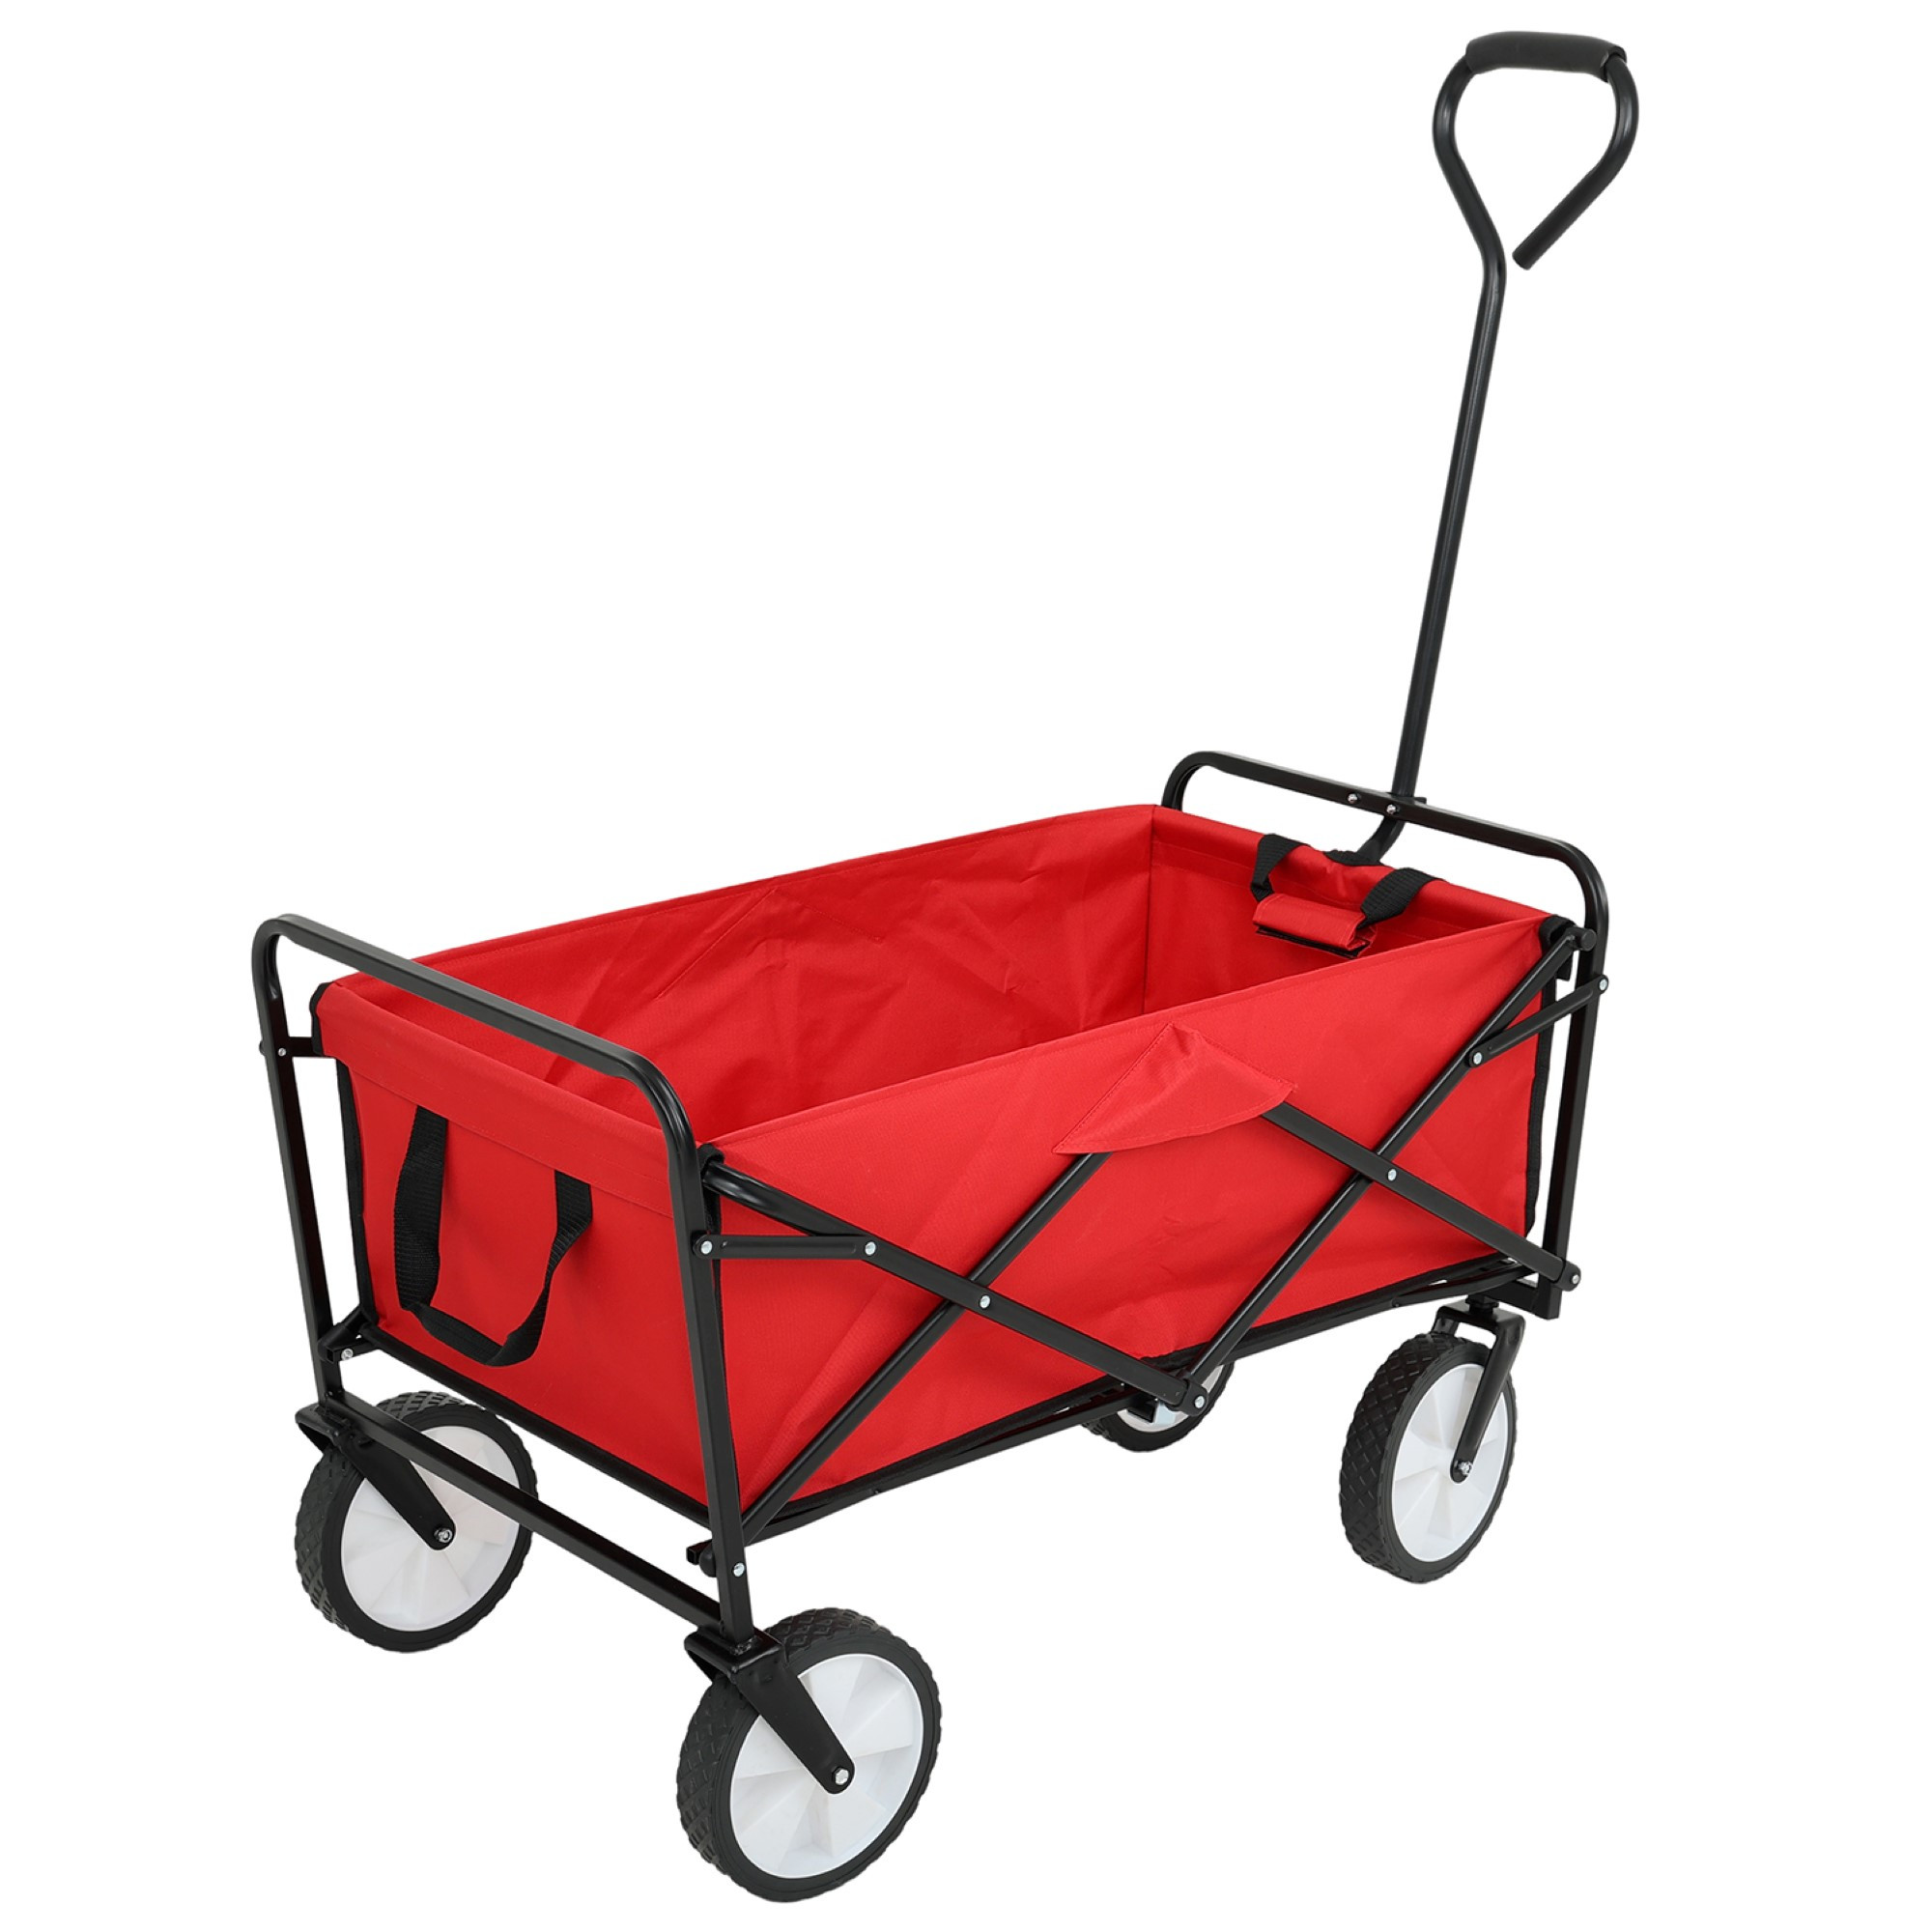 Składany wózek plażowy TYRS z plastikowymi kółkami maksymalny udźwig 110 kg w kolorze czerwonym - AKORD Fabryka Mebli